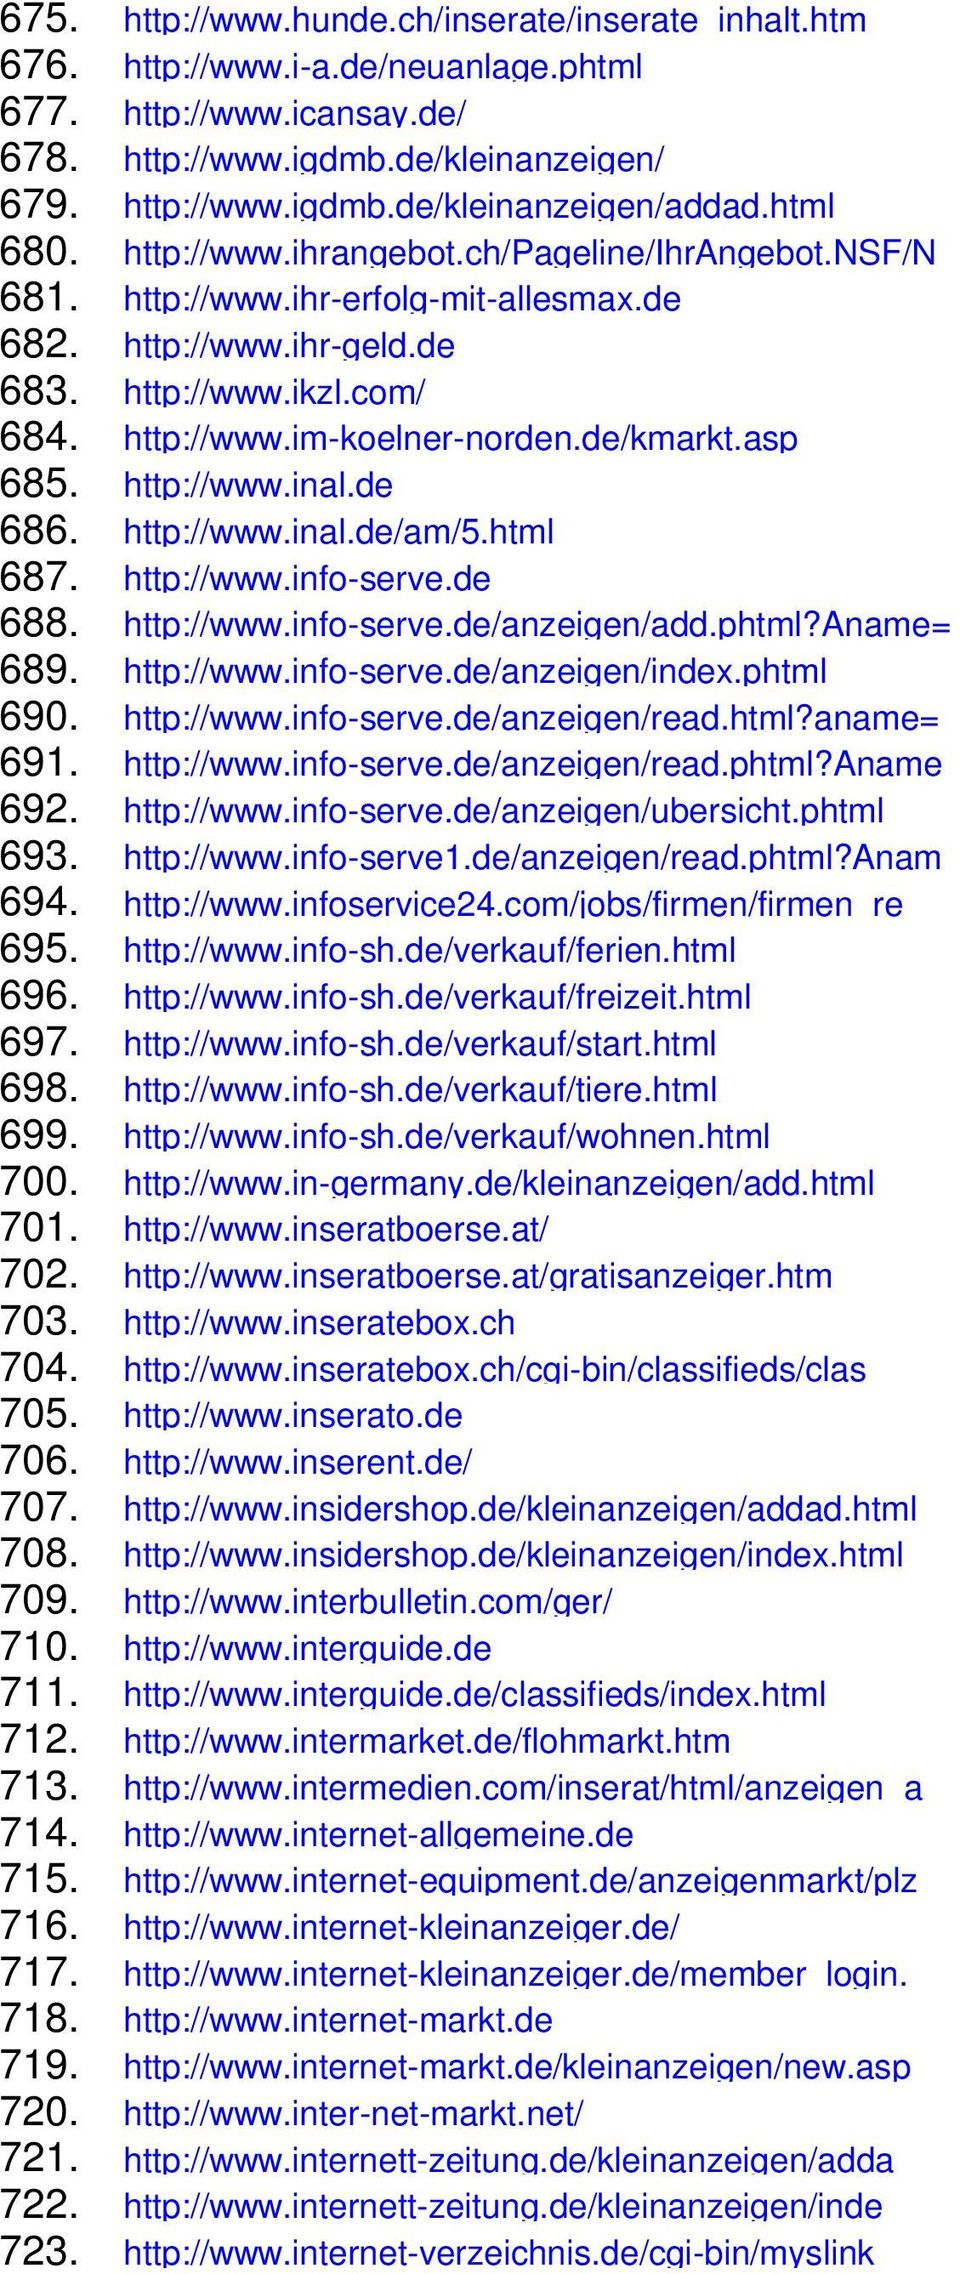 de/kmarkt.asp 685. http://www.inal.de 686. http://www.inal.de/am/5.html 687. http://www.info-serve.de 688. http://www.info-serve.de/anzeigen/add.phtml?aname= 689. http://www.info-serve.de/anzeigen/index.